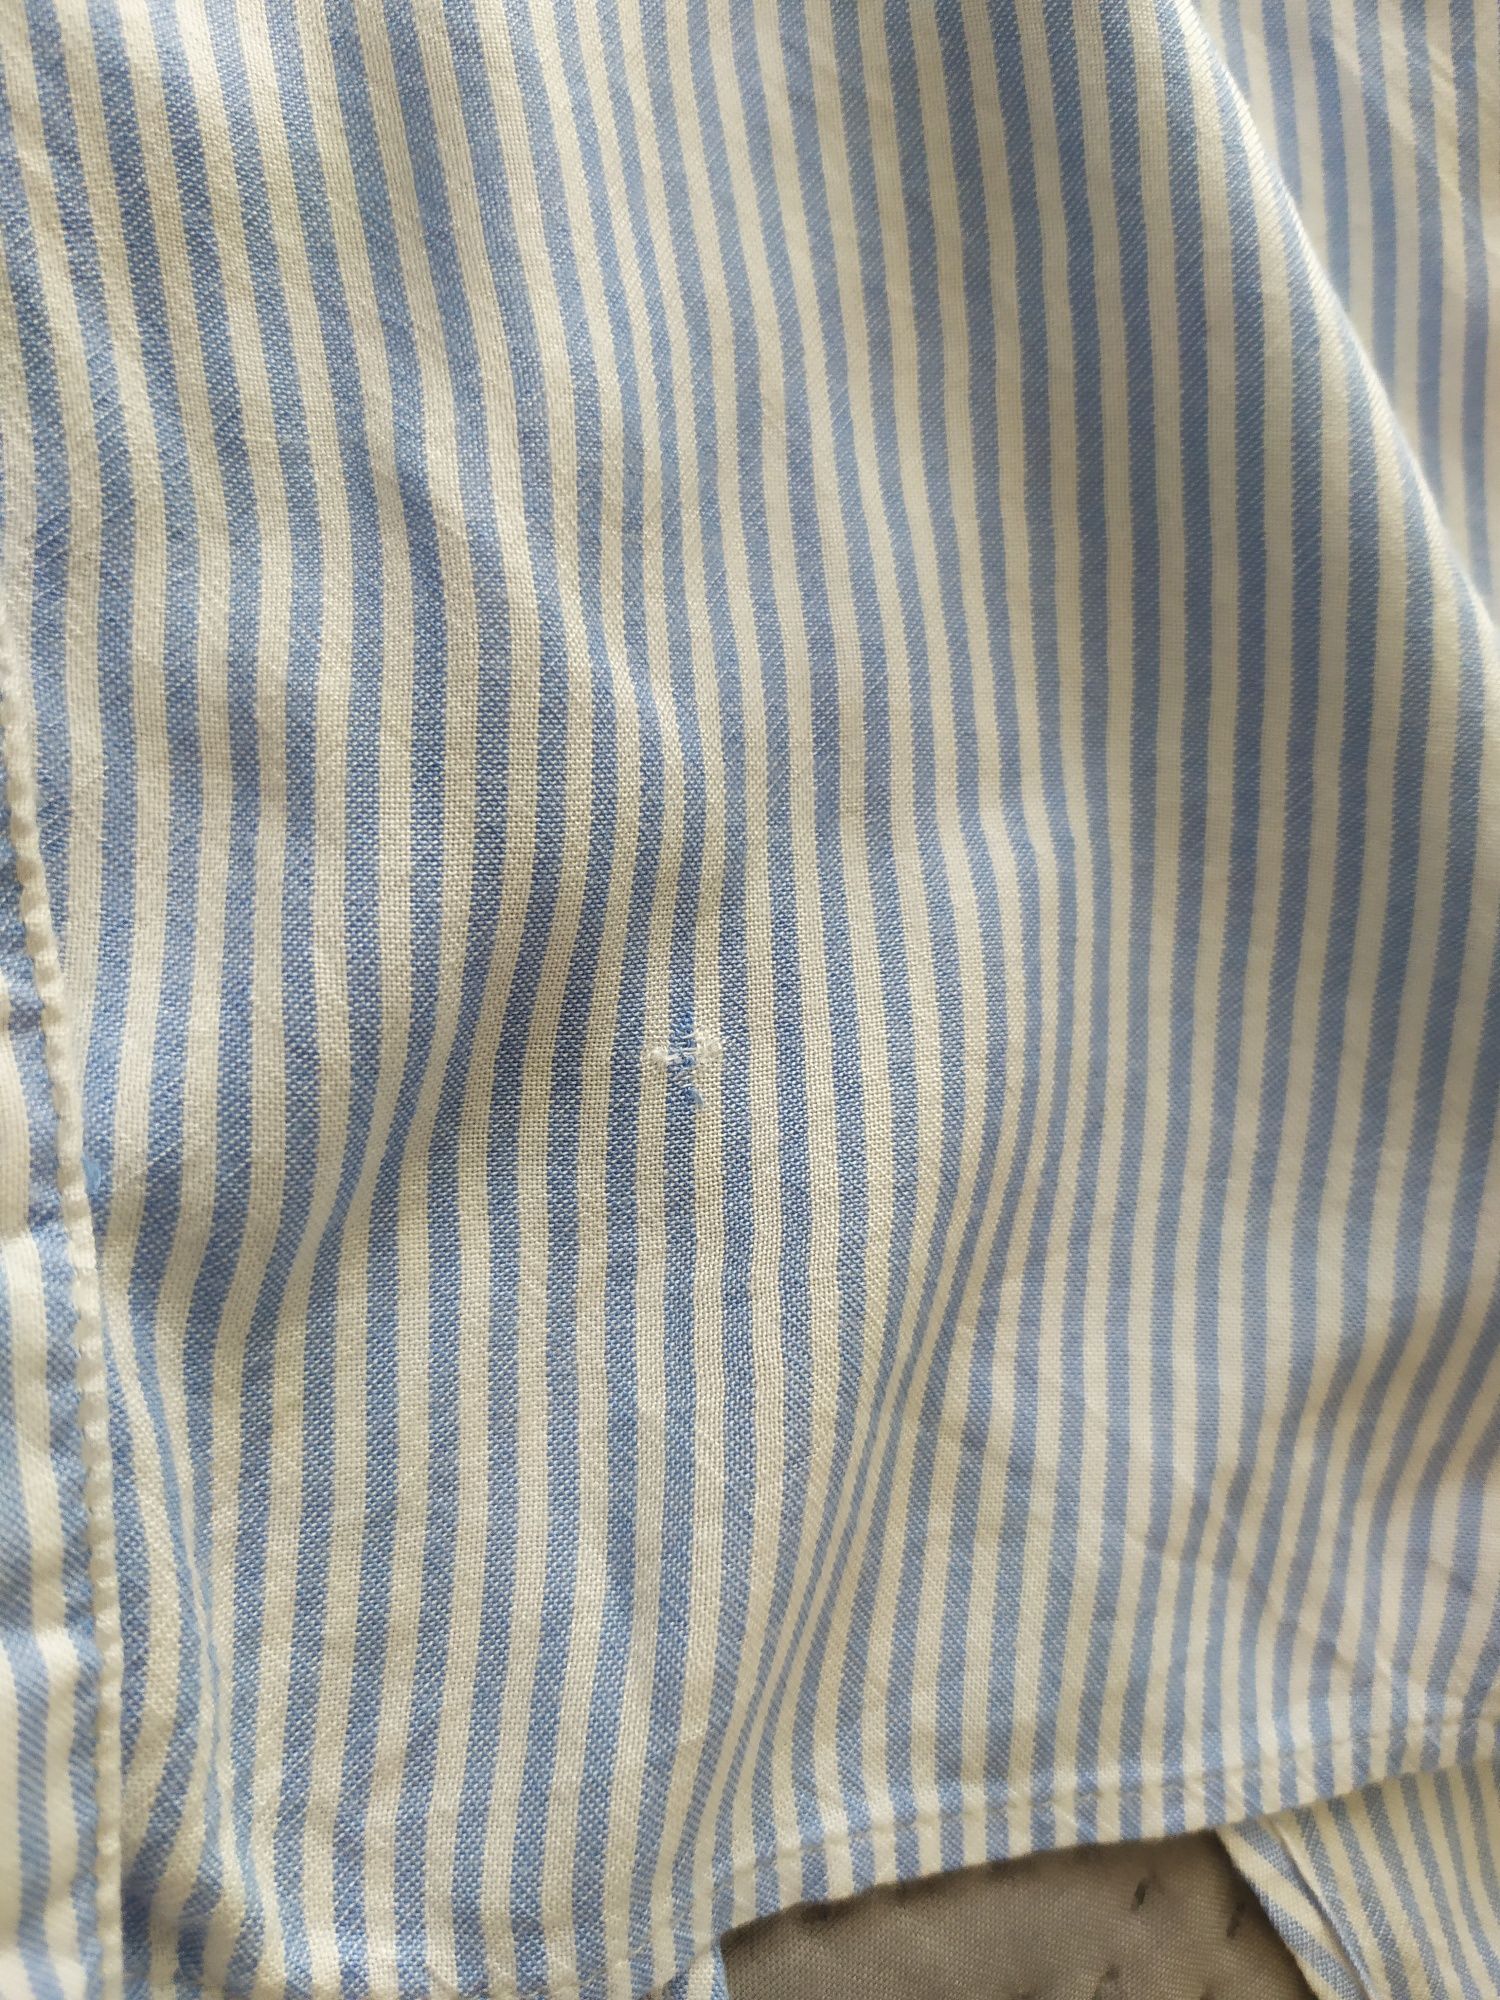 Koszula bez rękawów, bluzka  H&M 152 cm